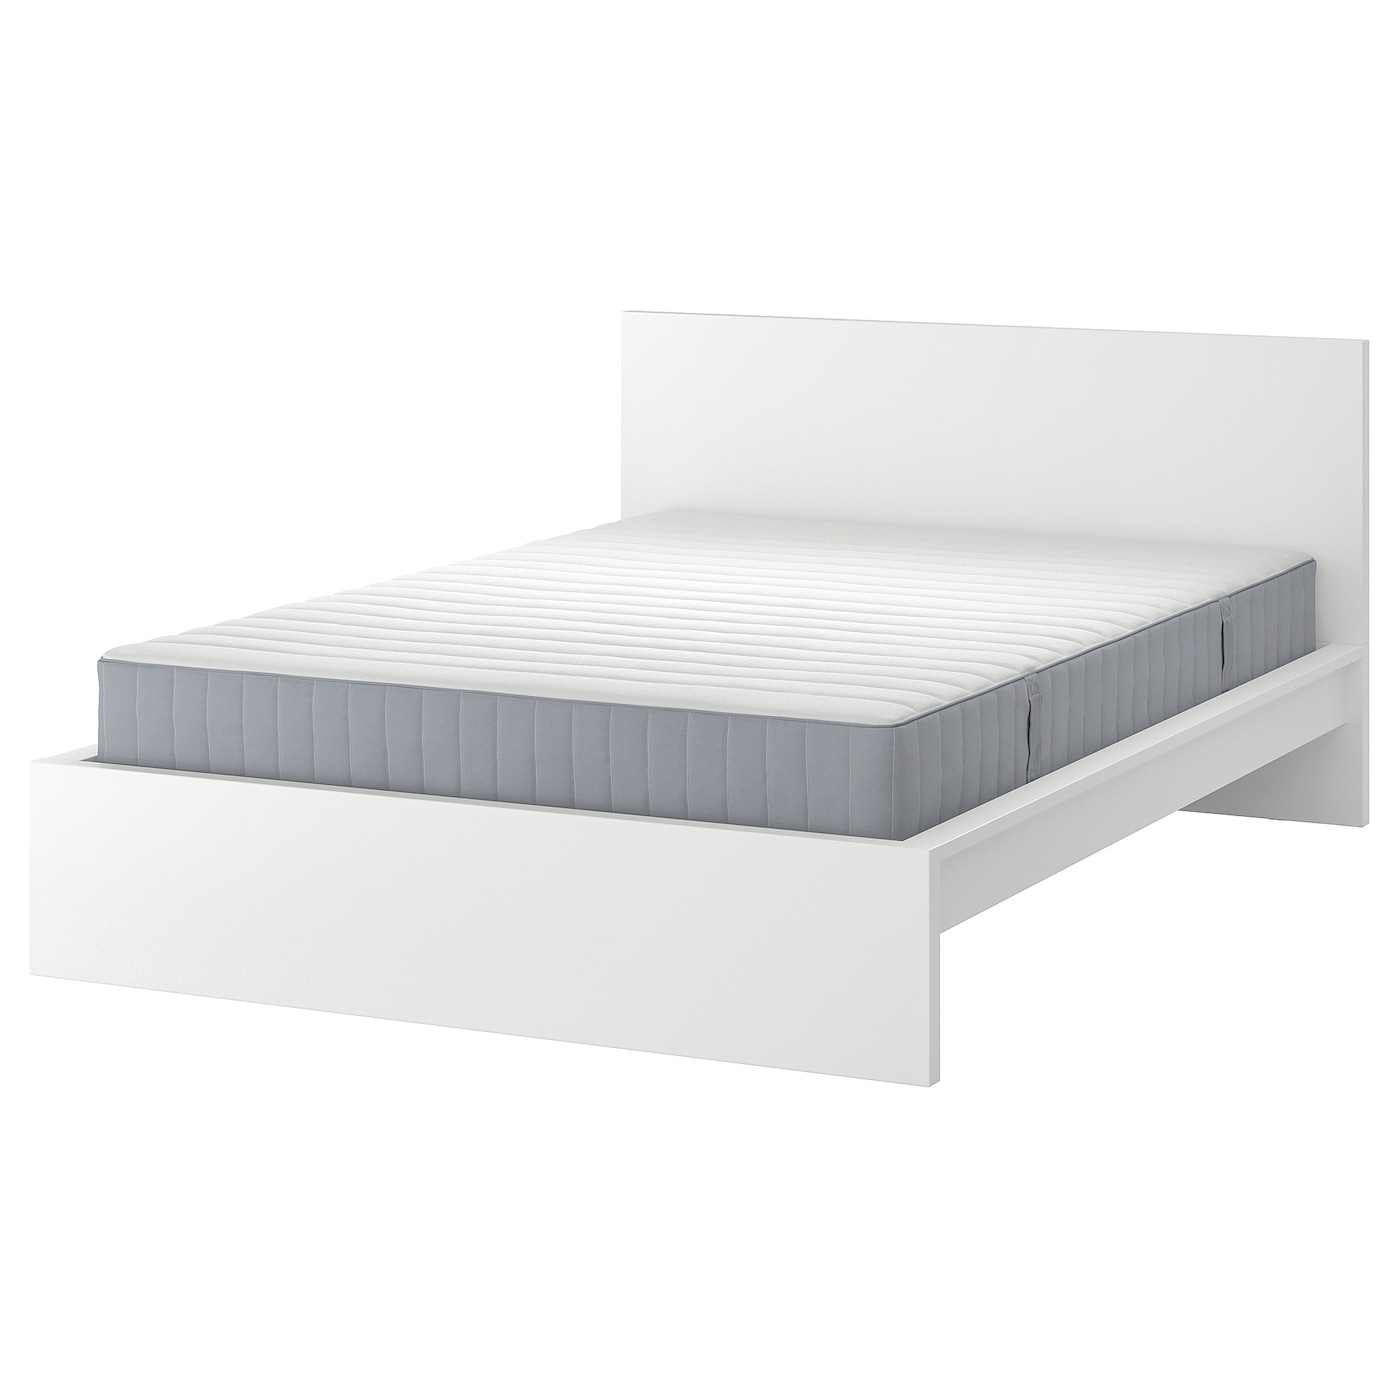 Кровать - IKEA MALM, 200х140 см, матрас жесткий, белый, МАЛЬМ ИКЕА